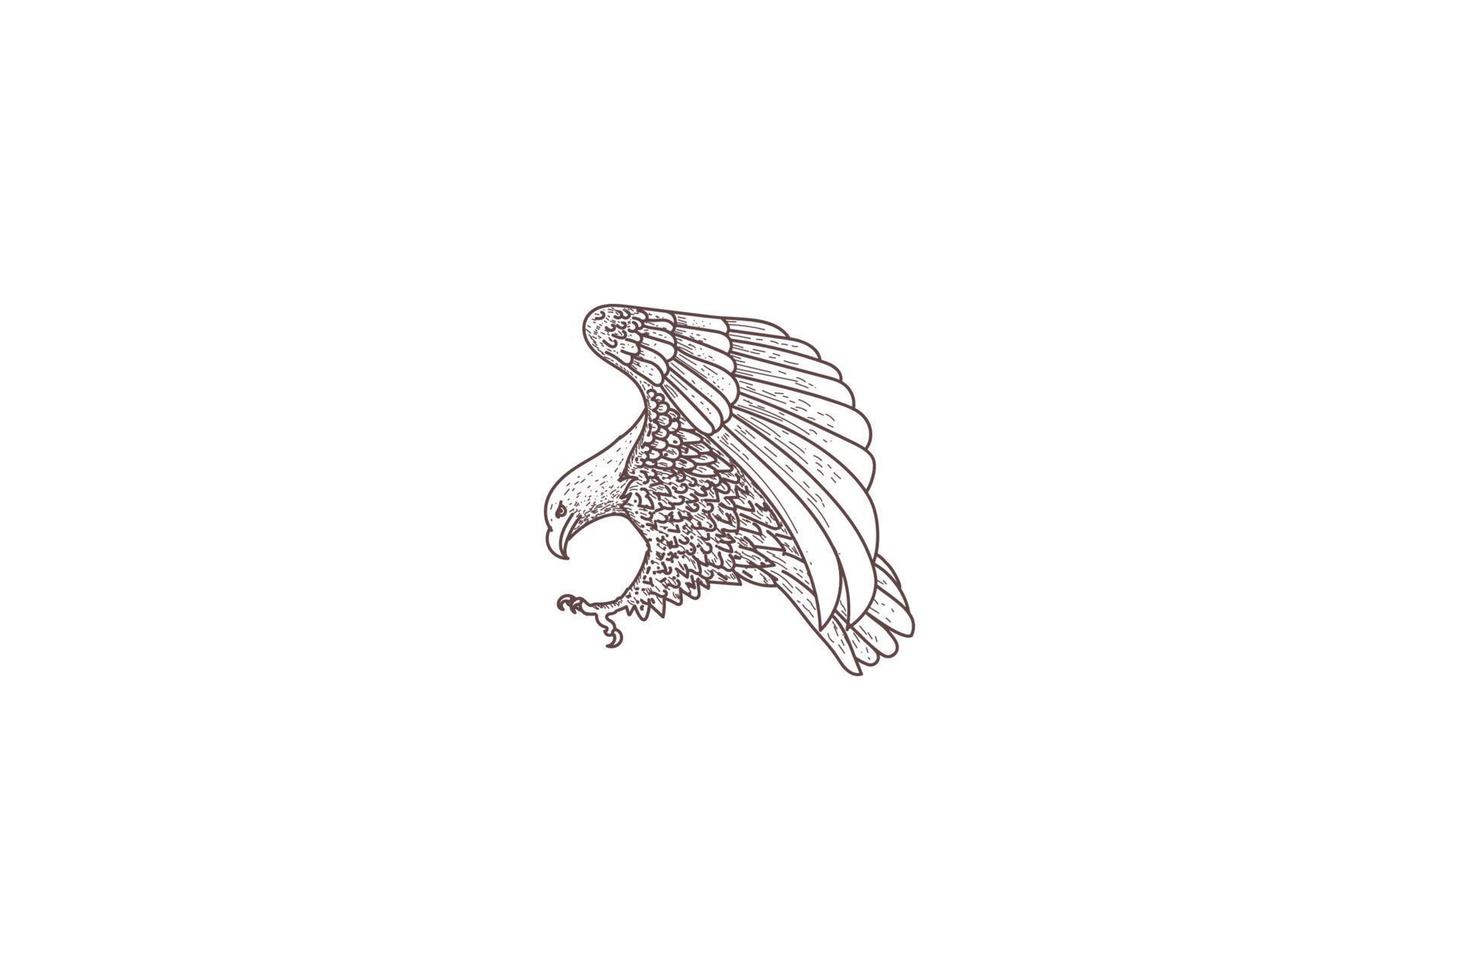 disegno del logo dell'uccello del falco del falco dell'aquila calva vintage retrò disegnato a mano vettore